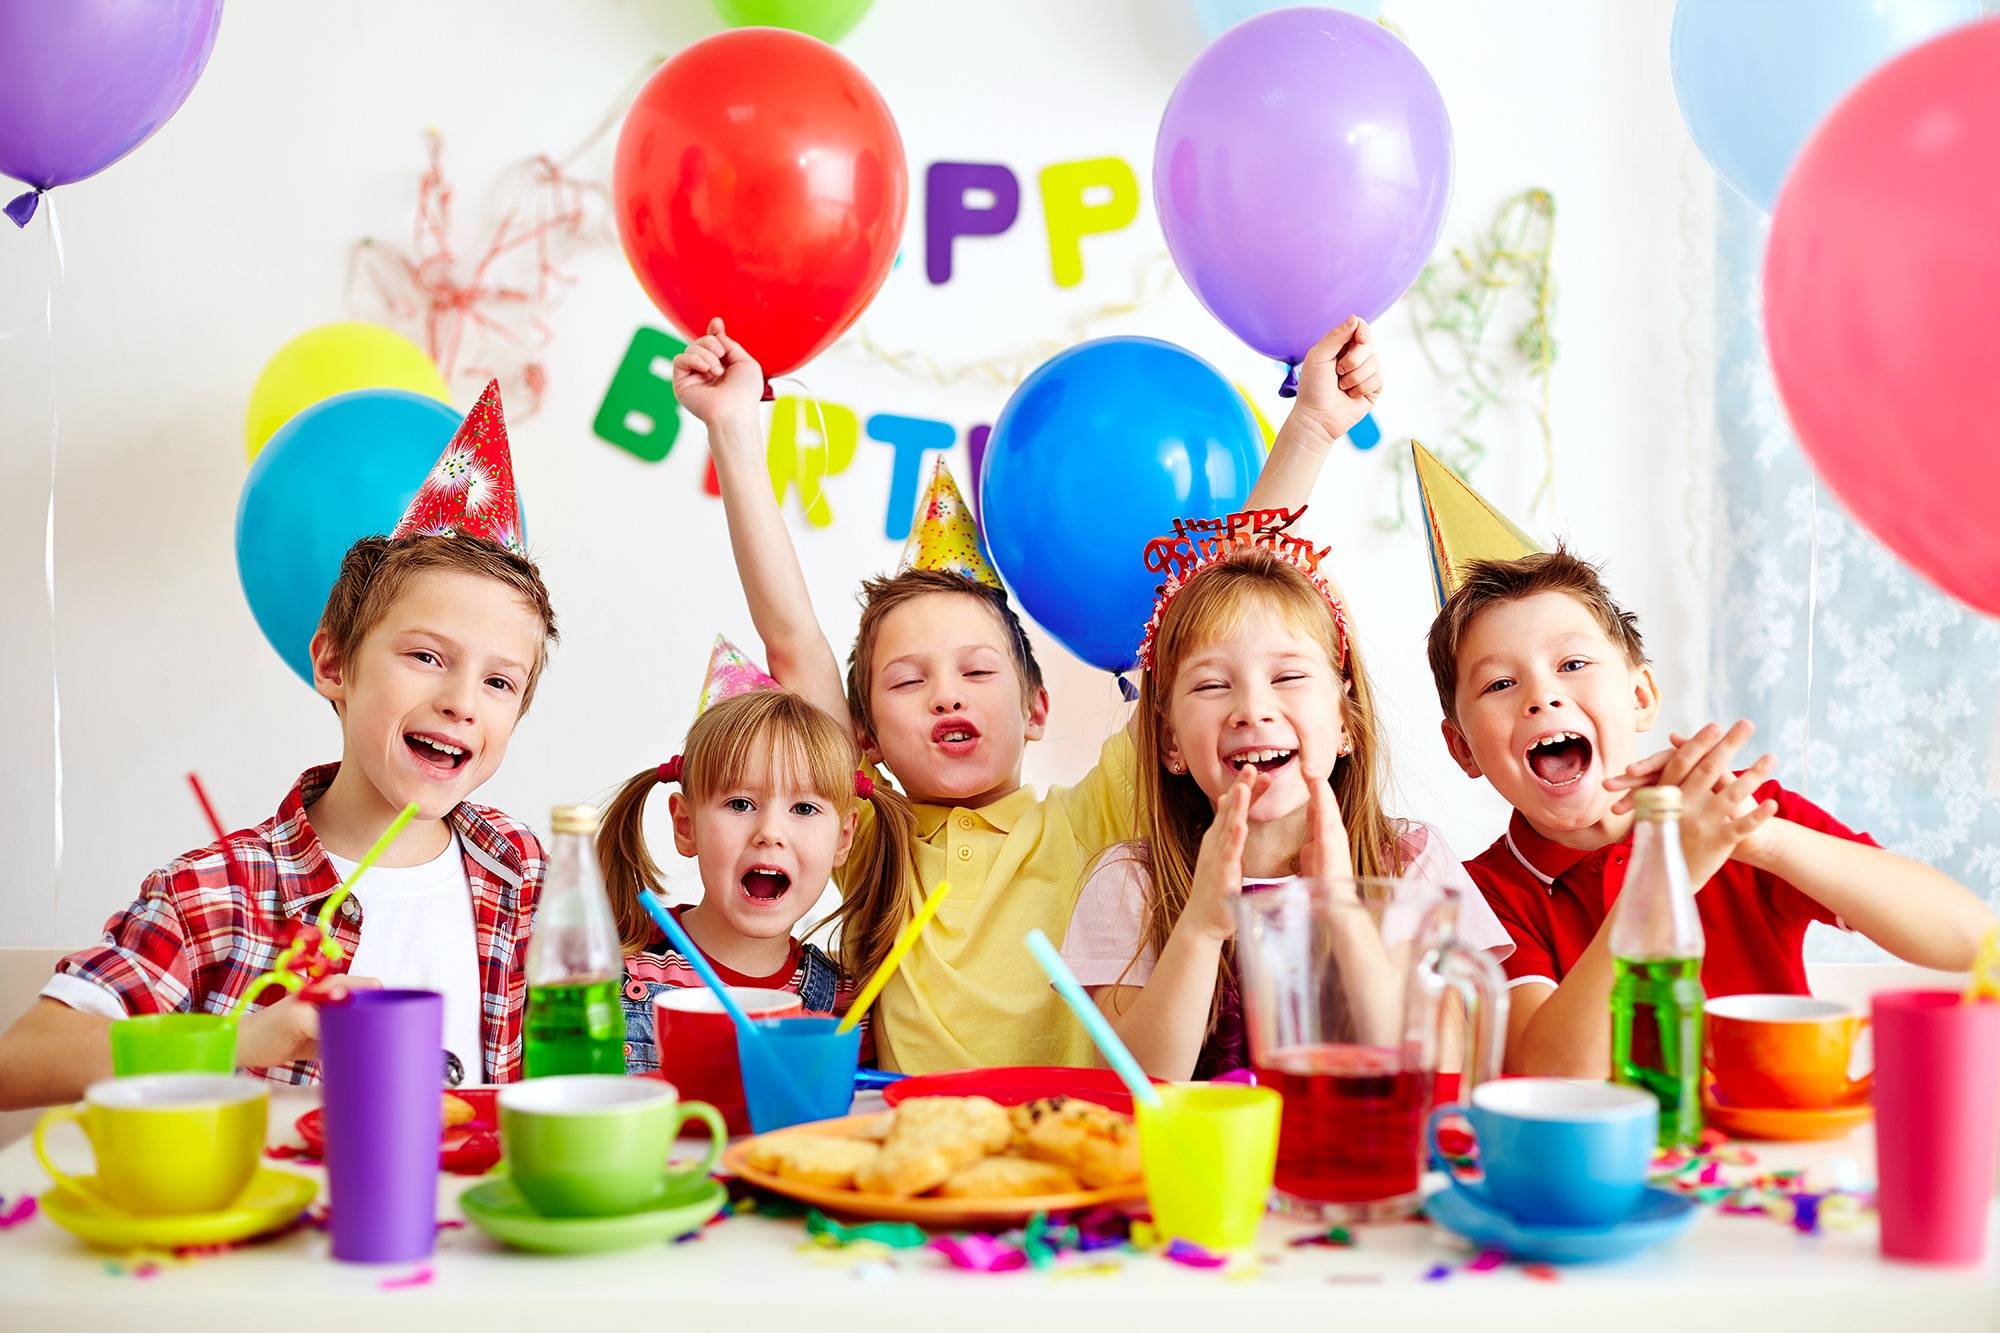 Веселый праздник для детей, или конкурсы на день рождения на 10 лет
веселый праздник для детей, или конкурсы на день рождения на 10 лет